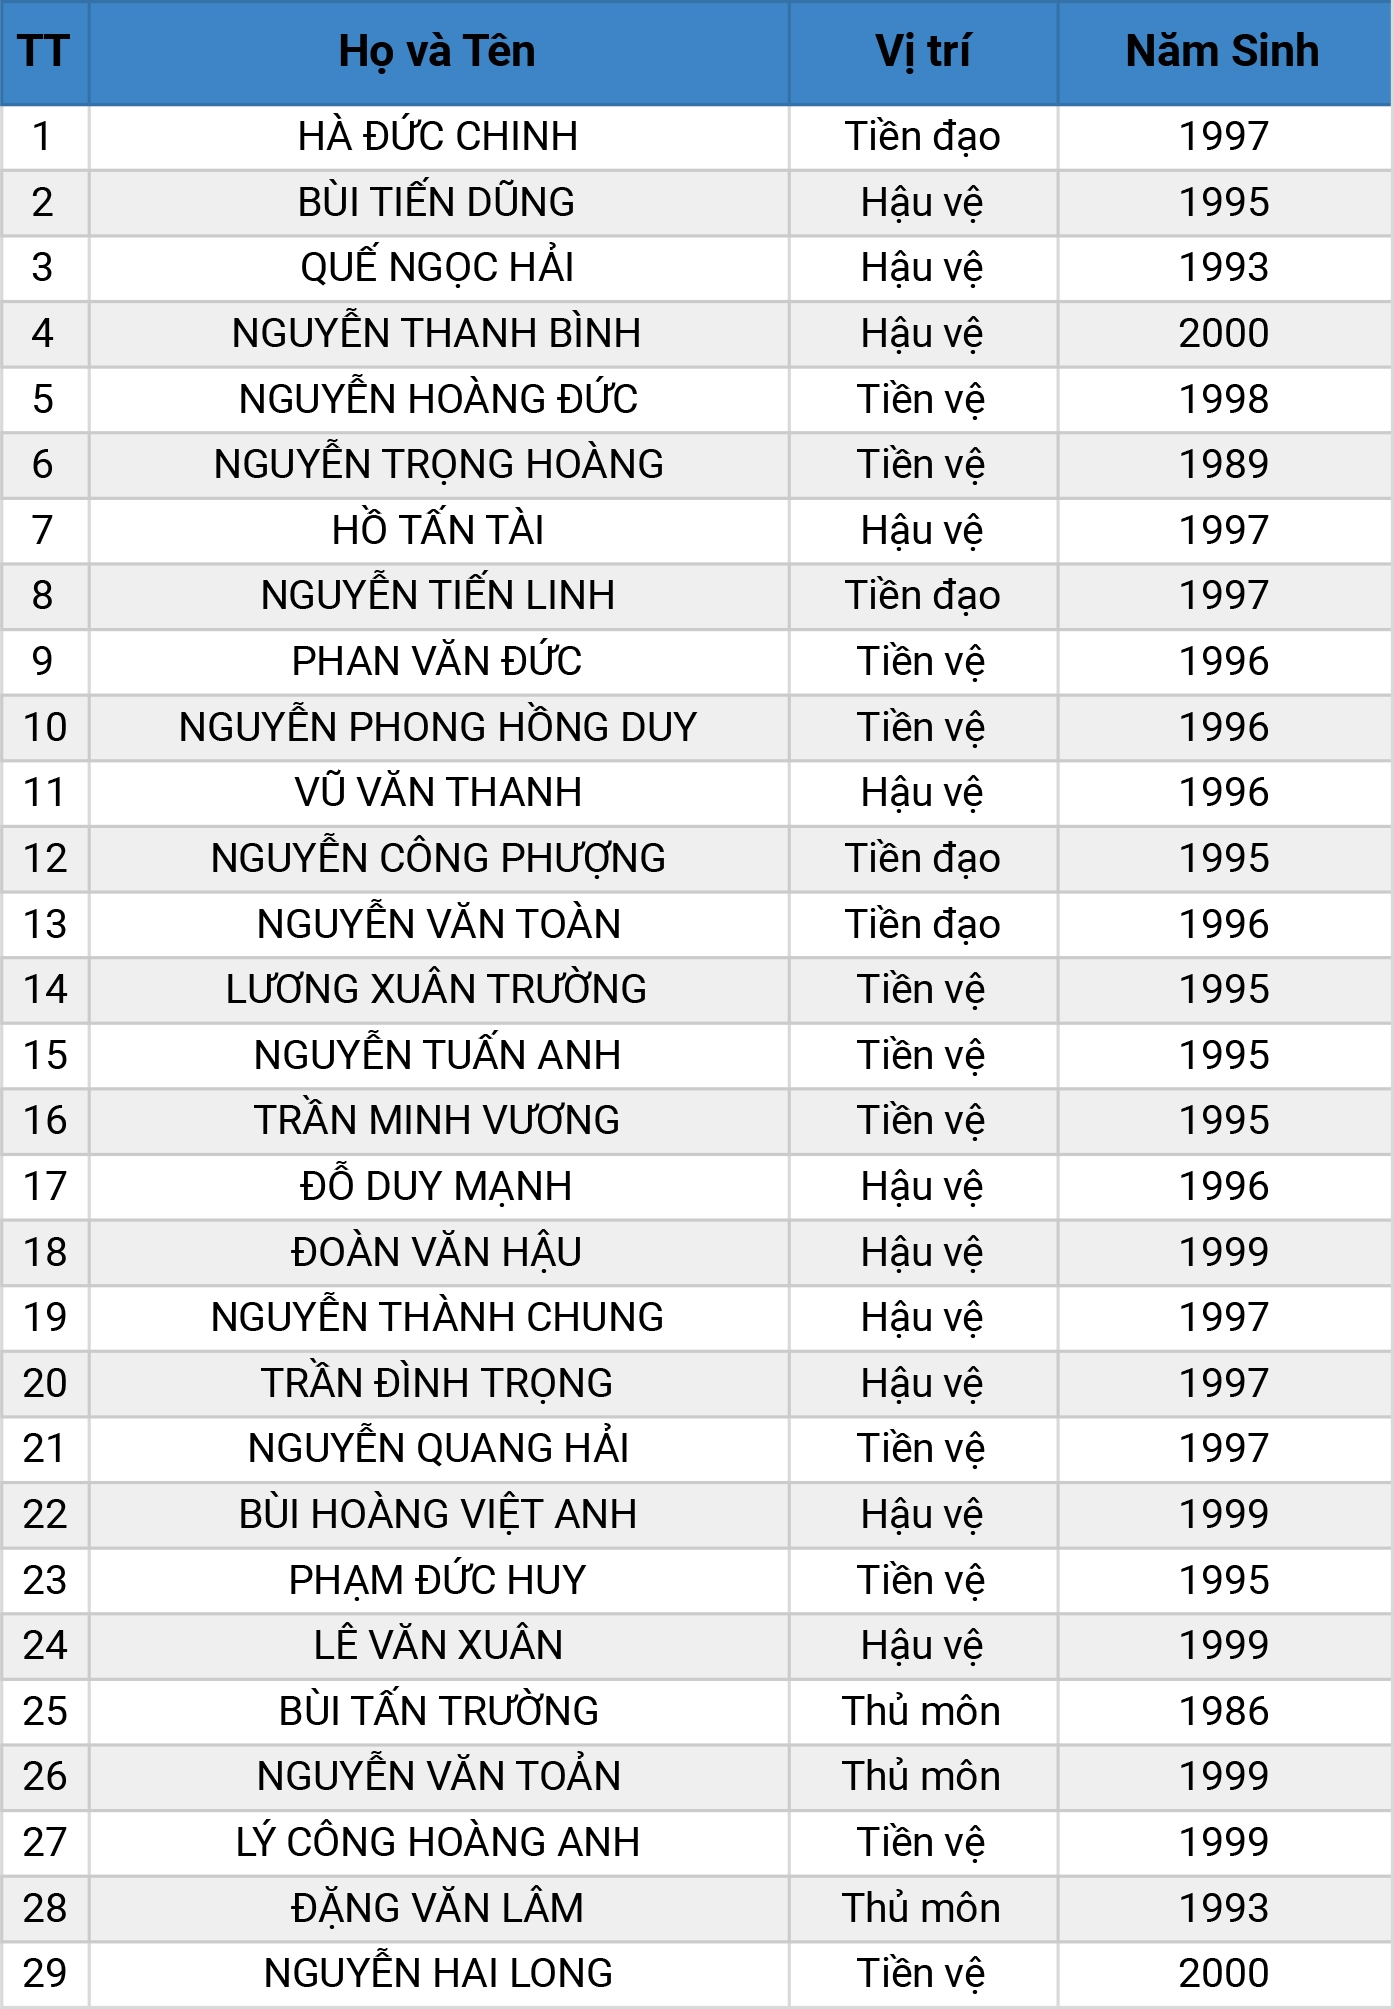 Công bố danh sách 29 cầu thủ ĐT Việt Nam thi đấu Vòng loại World Cup tại UAE 1